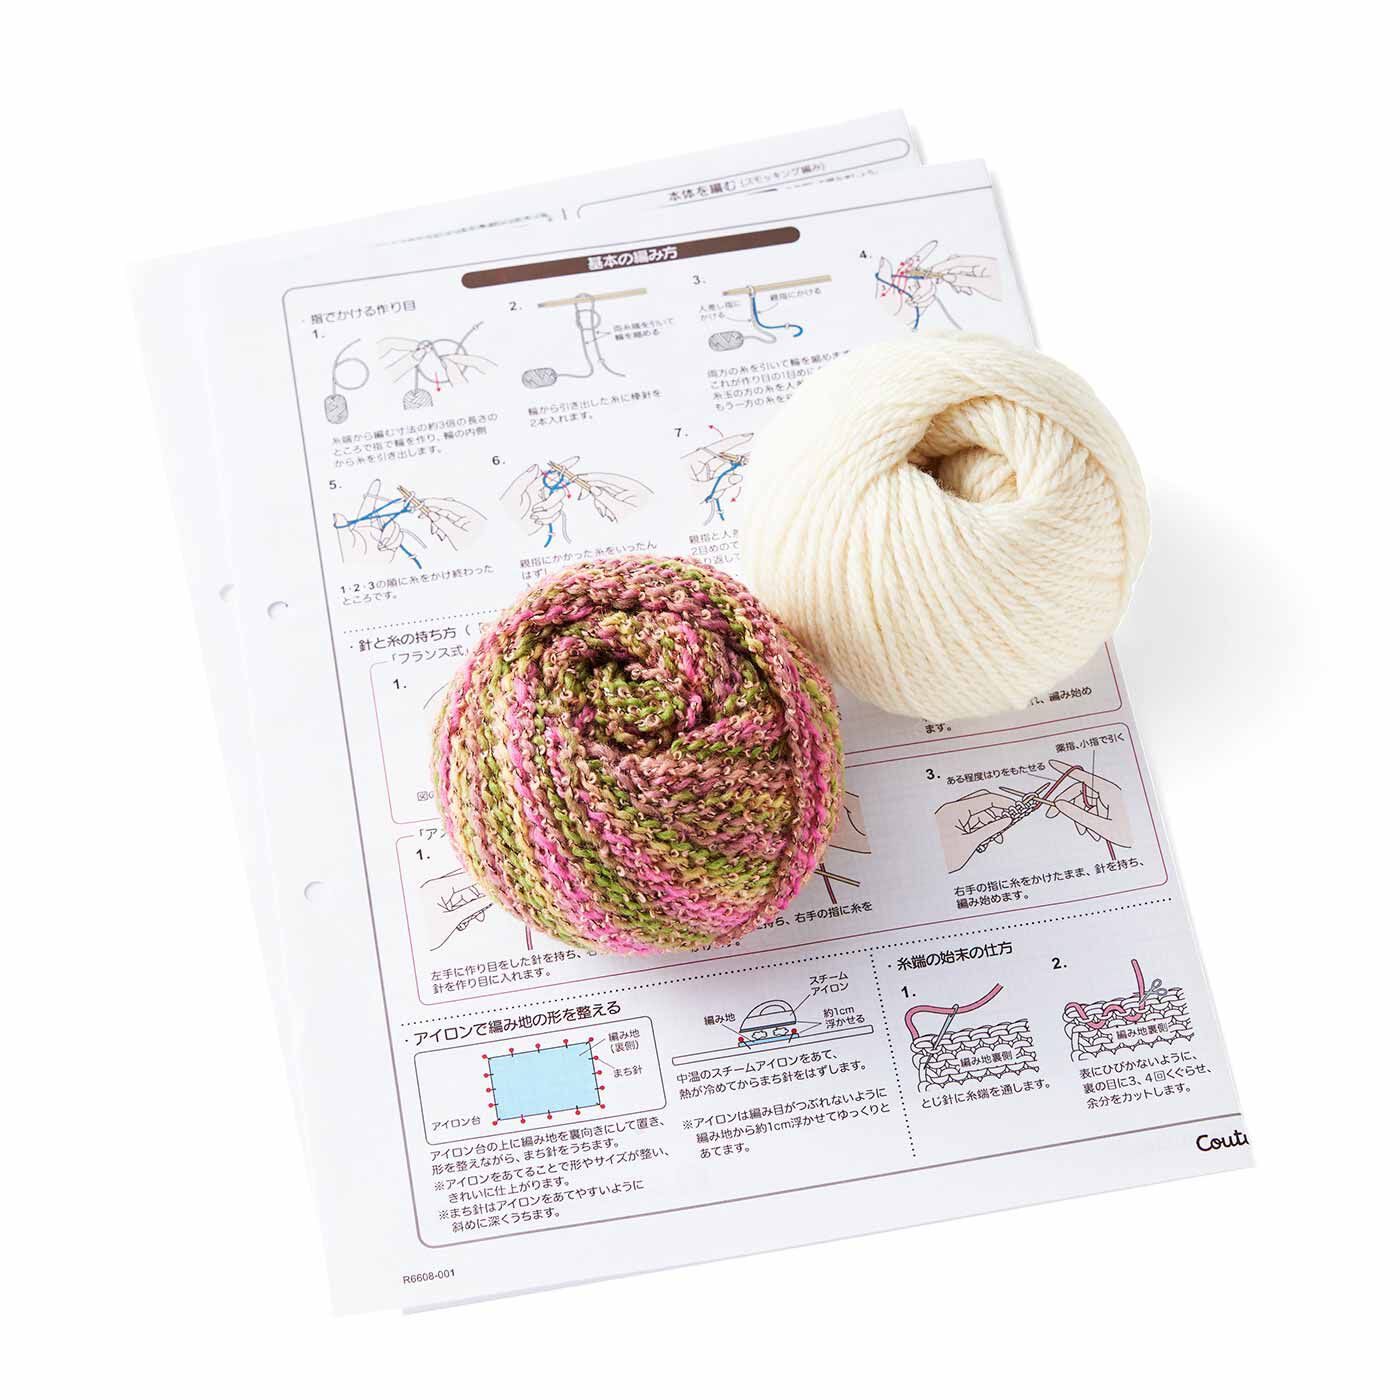 Couturier|棒針編みの沼にはまる ユニーク編み地のサンプラーの会|●1回分のお届けキット例です。